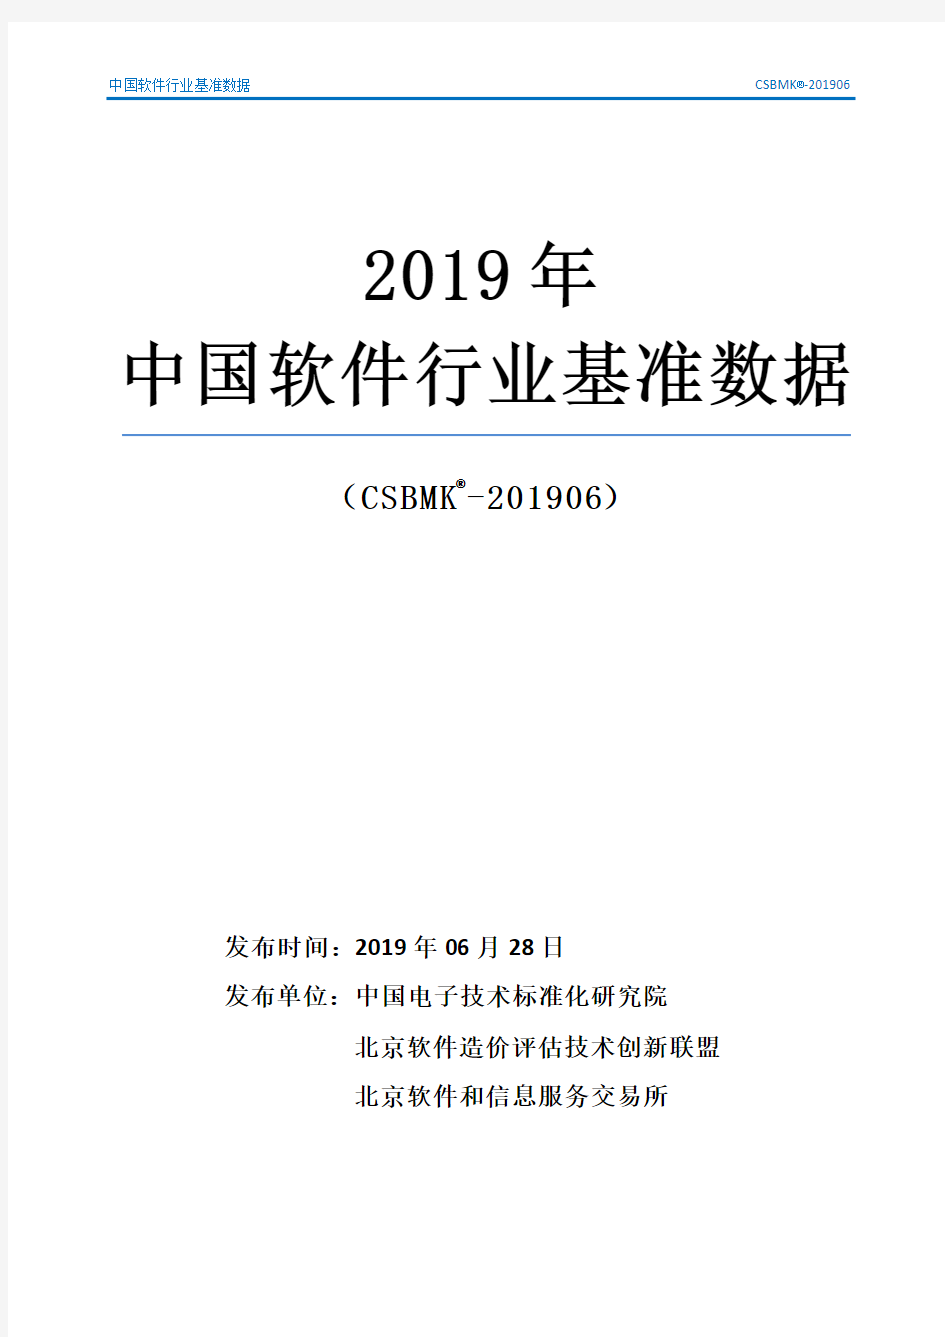 2019年中国软件行业基准数据